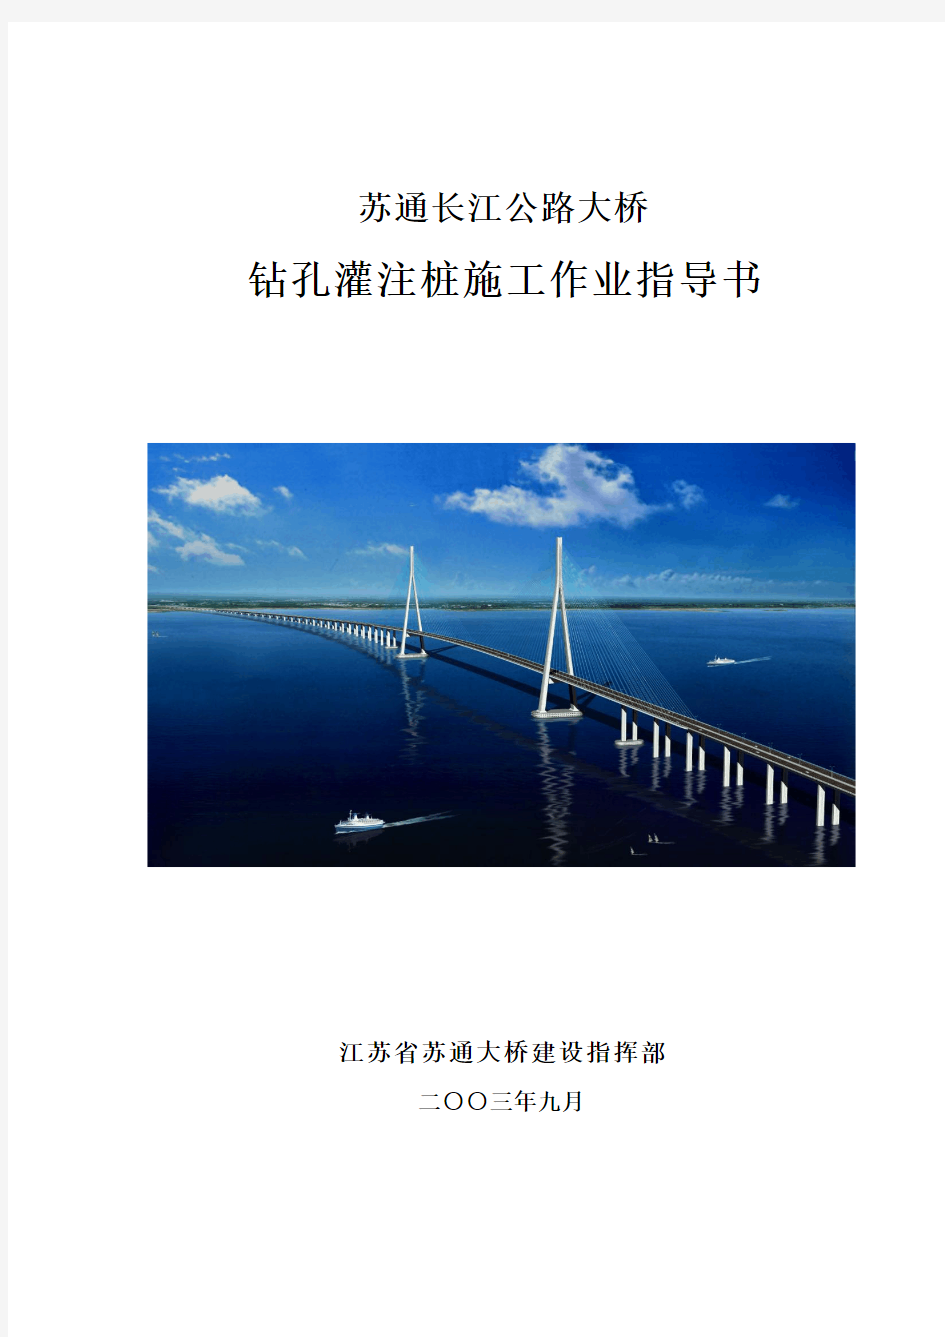 苏通大桥钻孔灌注桩施工作业指导书(最终版)